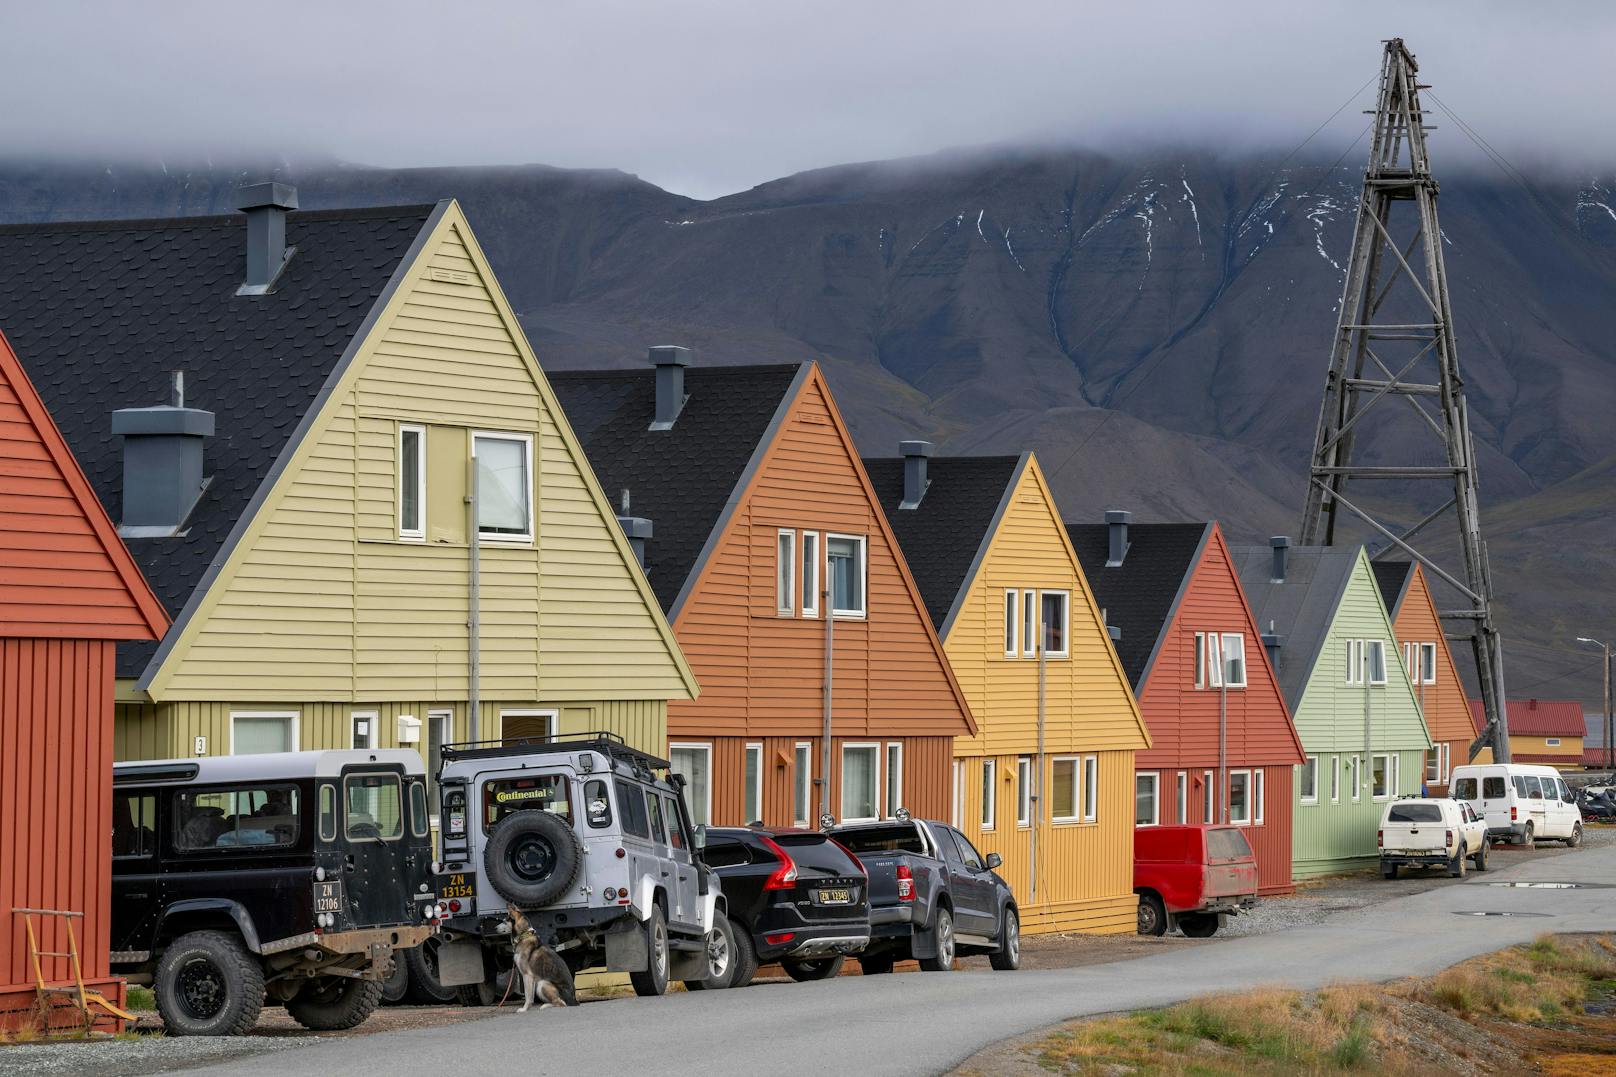 Zusätzlich ist per Gesetz festgehalten, dass jeder, der sich nicht mehr um sich selbst kümmern kann, die Insel verlassen muss. Schließlich gibt es auf Longyearbyen ohnehin kein richtiges Krankenhaus, kein Altenheim und auch keine Pflegedienste.